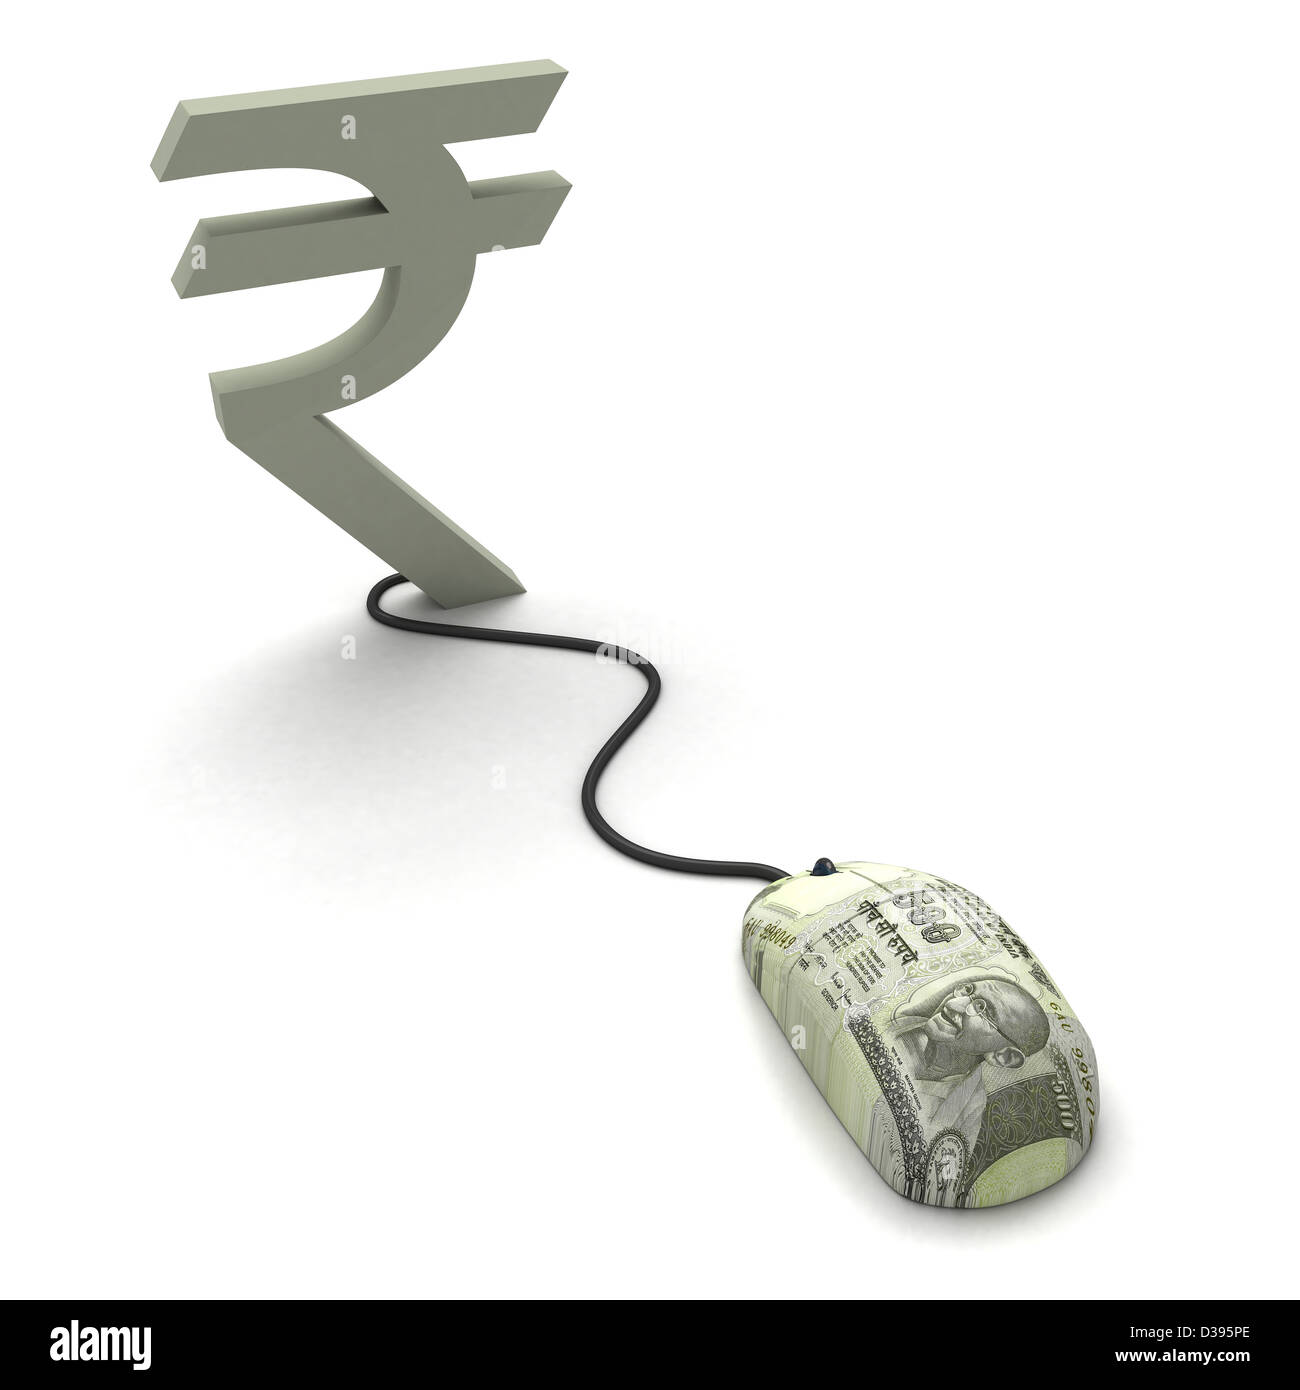 Immagine concettuale del mouse collegamento a rupia indiana simbolo Foto Stock